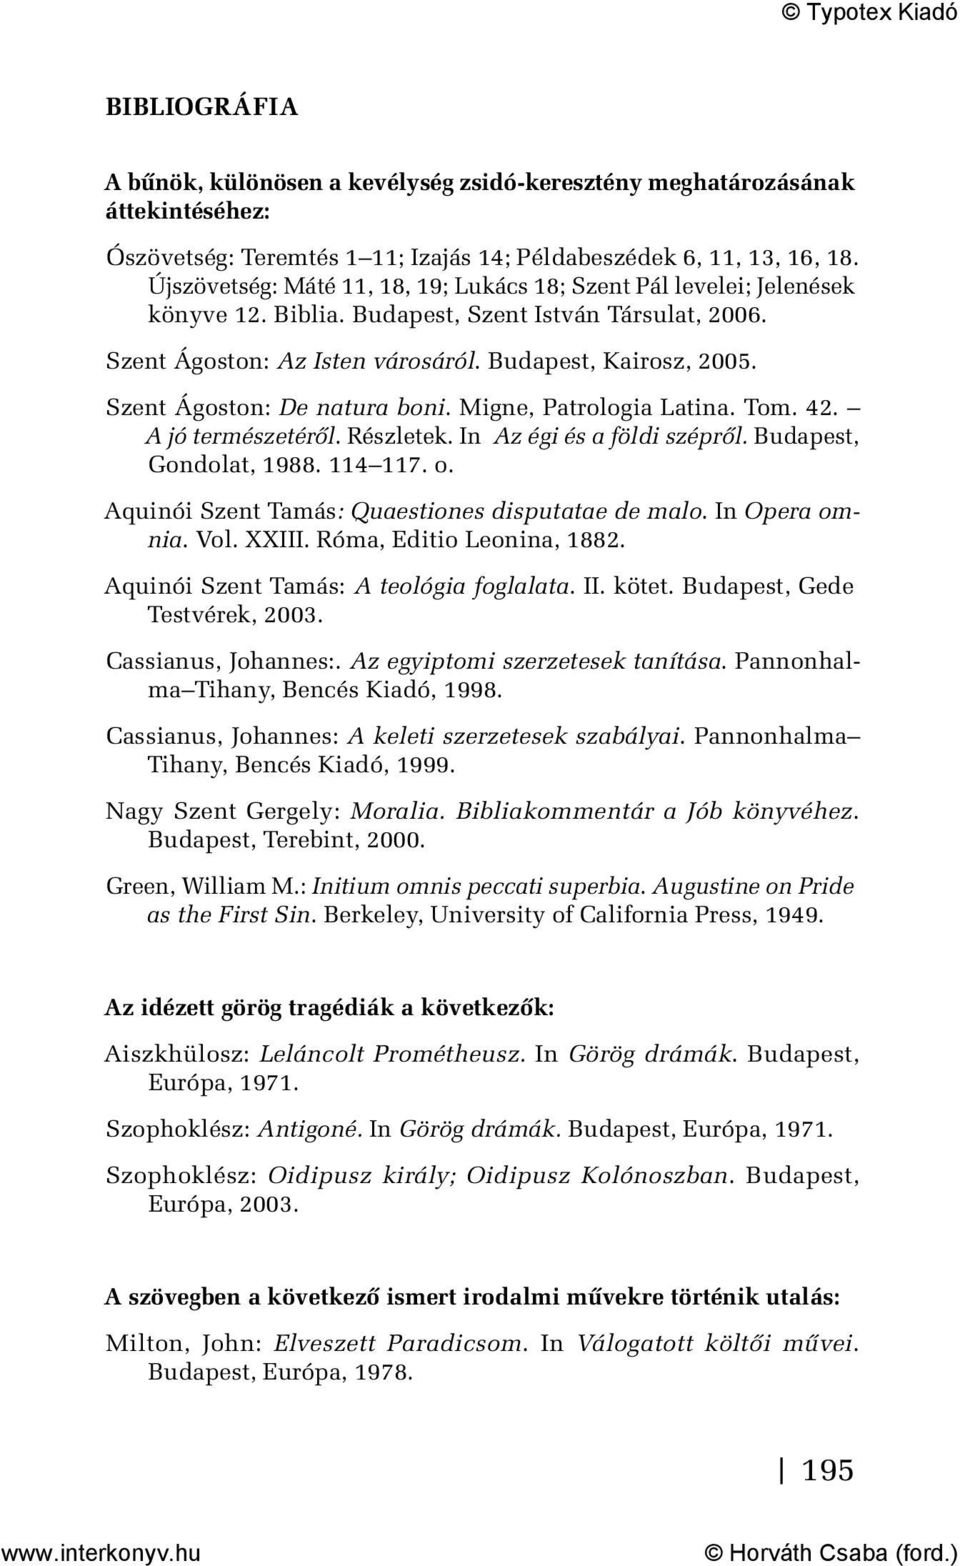 Szent Ágoston: De natura boni. Migne, Patrologia Latina. Tom. 42. A jó természetéről. Részletek. In Az égi és a földi szépről. Budapest, Gondolat, 1988. 114 117. o.